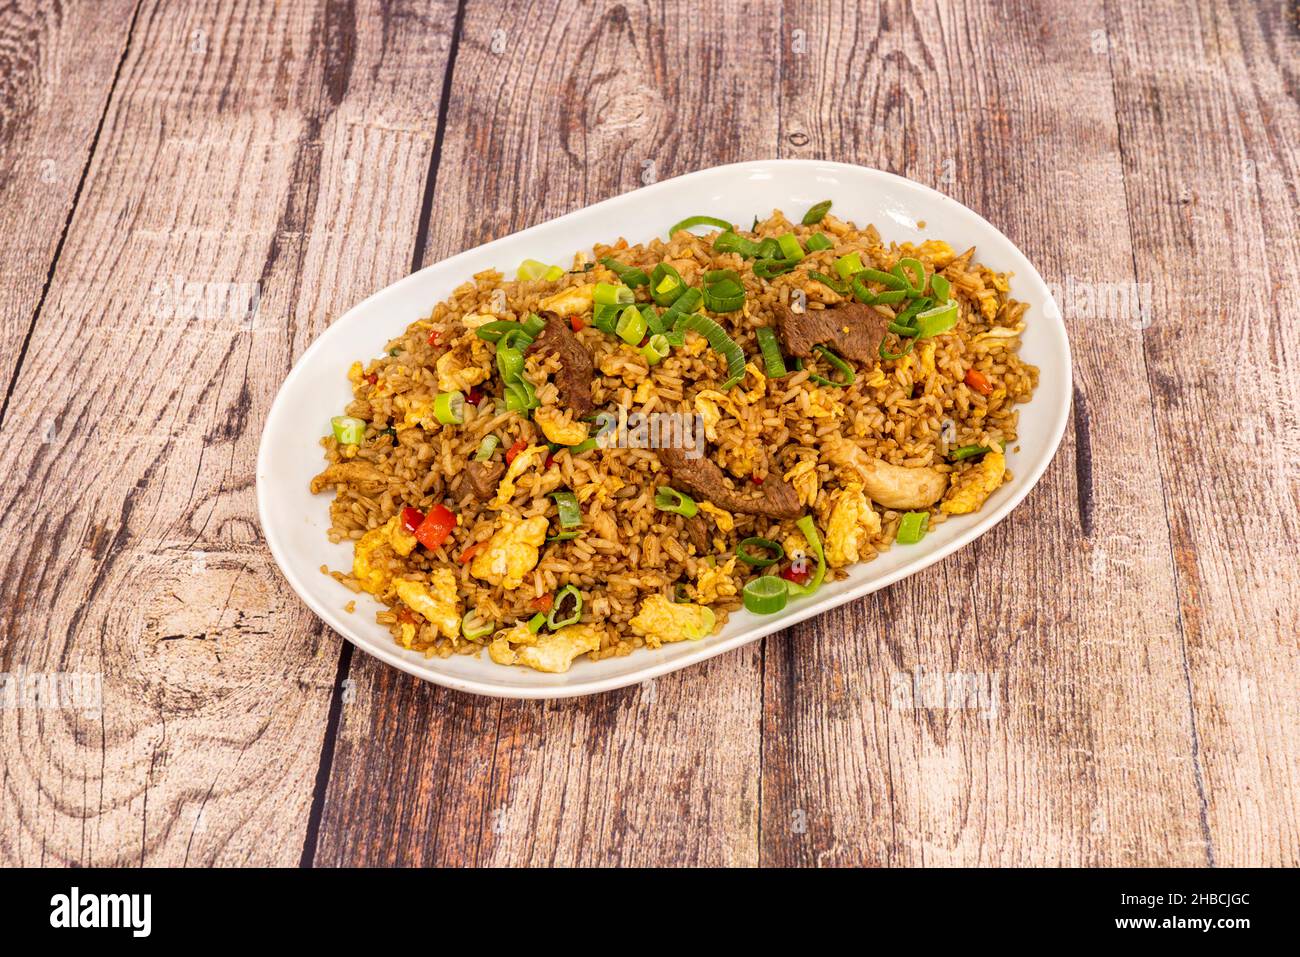 L'arroz chaufa, ou arroz de chaufa, est un plat à base de riz frit consommé au Pérou.Il fait partie du style gastronomique chinois-péruvien, connu sous le nom de Banque D'Images